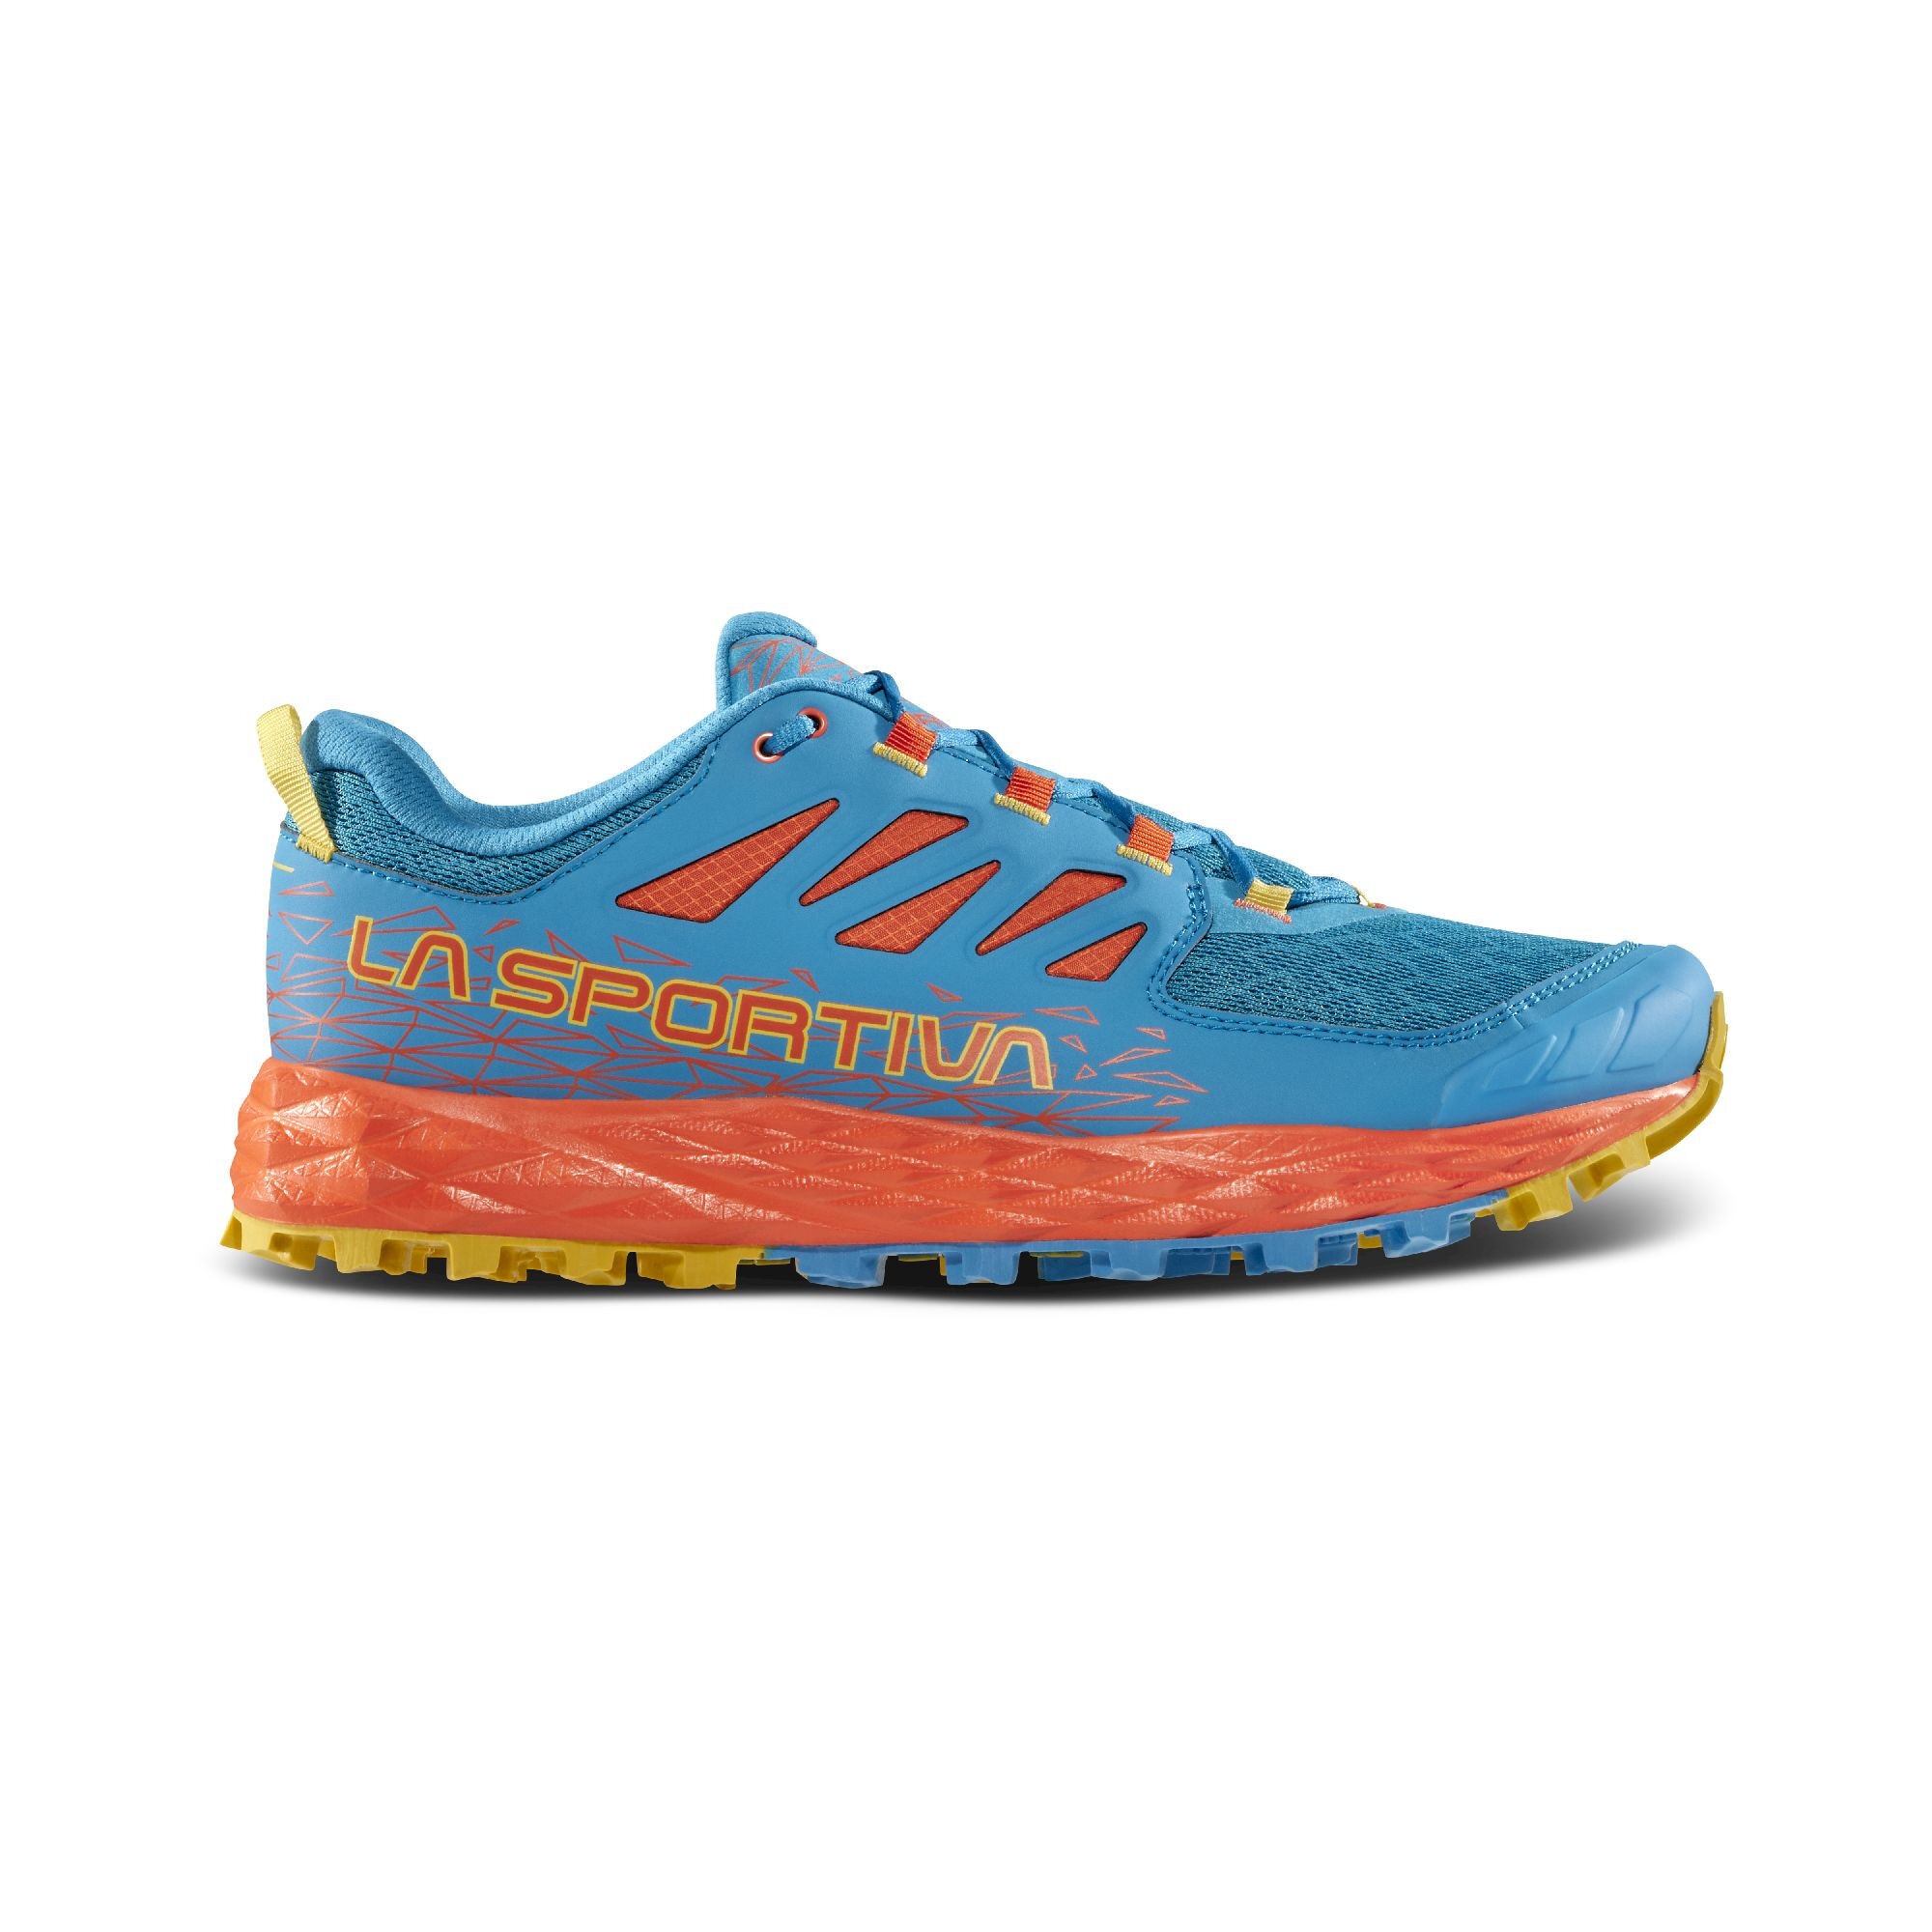 La Sportiva Lycan II - Trail running shoes - Men's